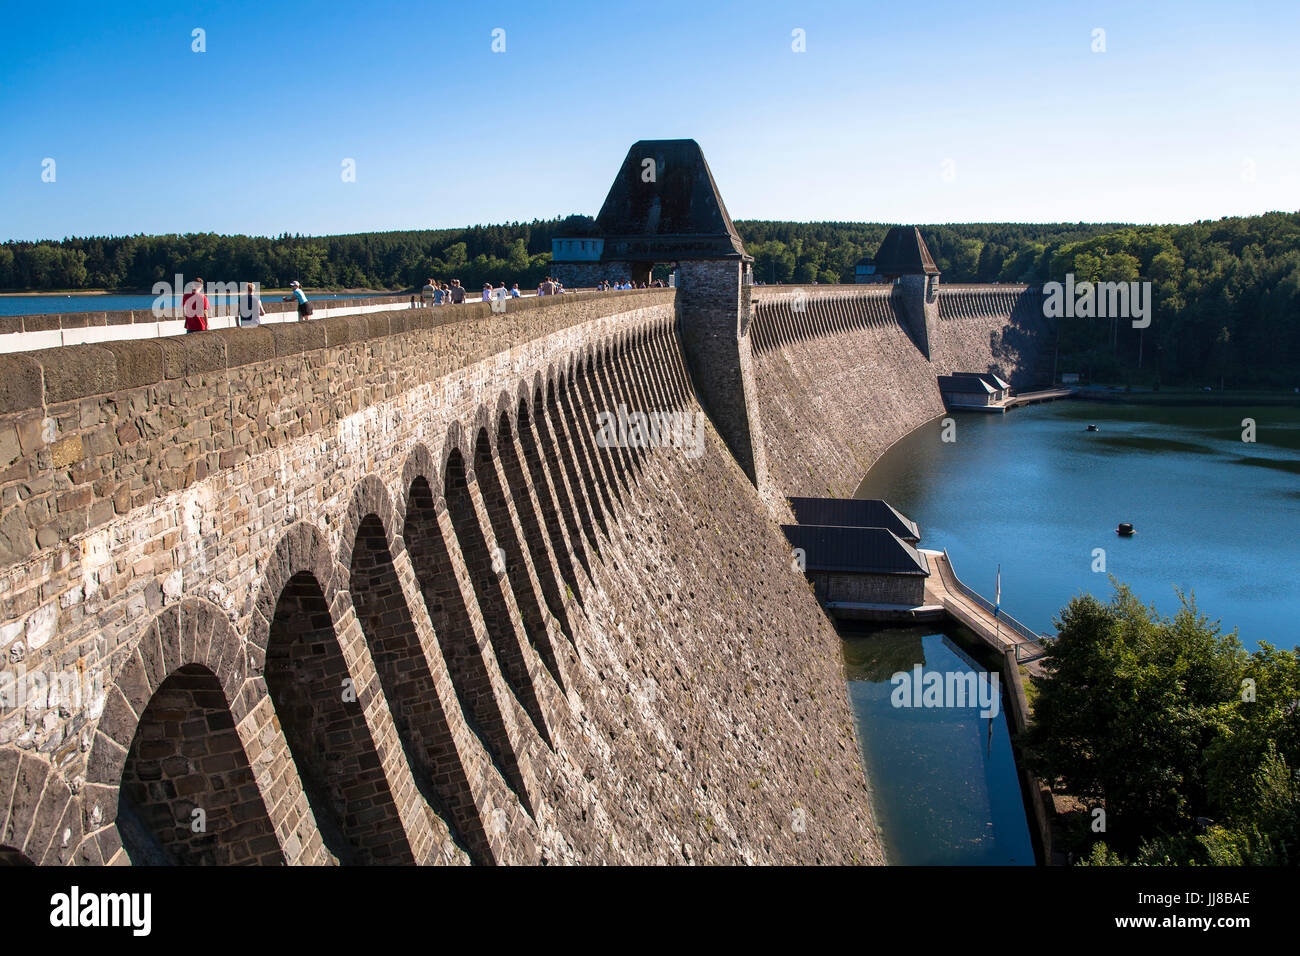 DEU, l'Allemagne, région du Sauerland, Moehnesee, Moehensee barrage d'approvisionnement en eau. DEU, Deutschland, Sauerland, Moehnesee, Moehneseetalsperre. Banque D'Images